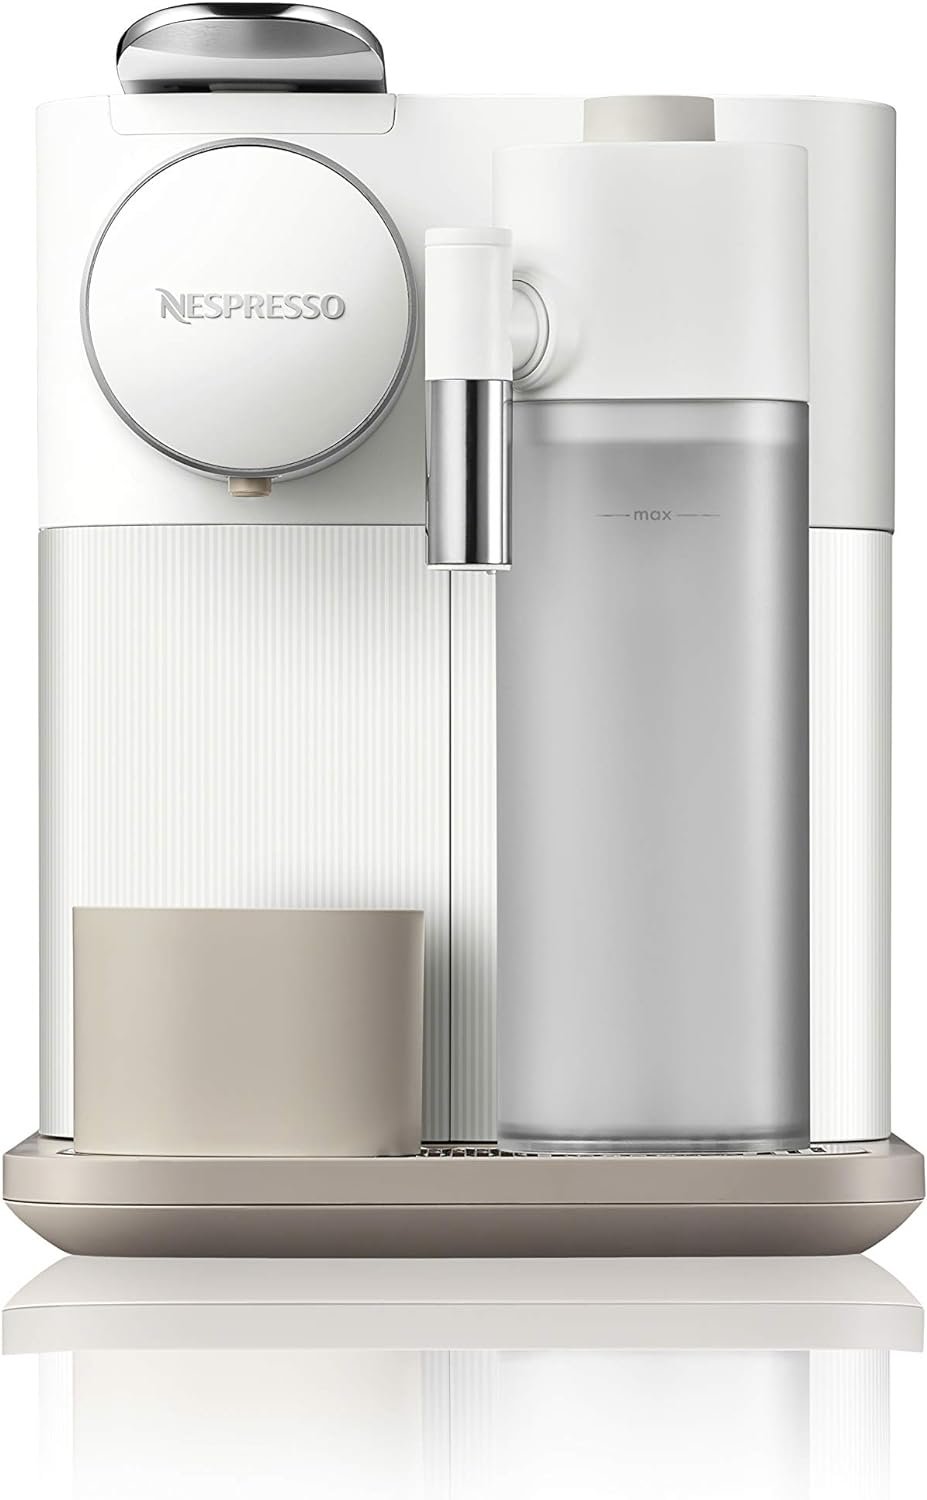 Nespresso Gran Lattissima Original Espresso Machine with Milk Frother by DeLonghi, Fresh White